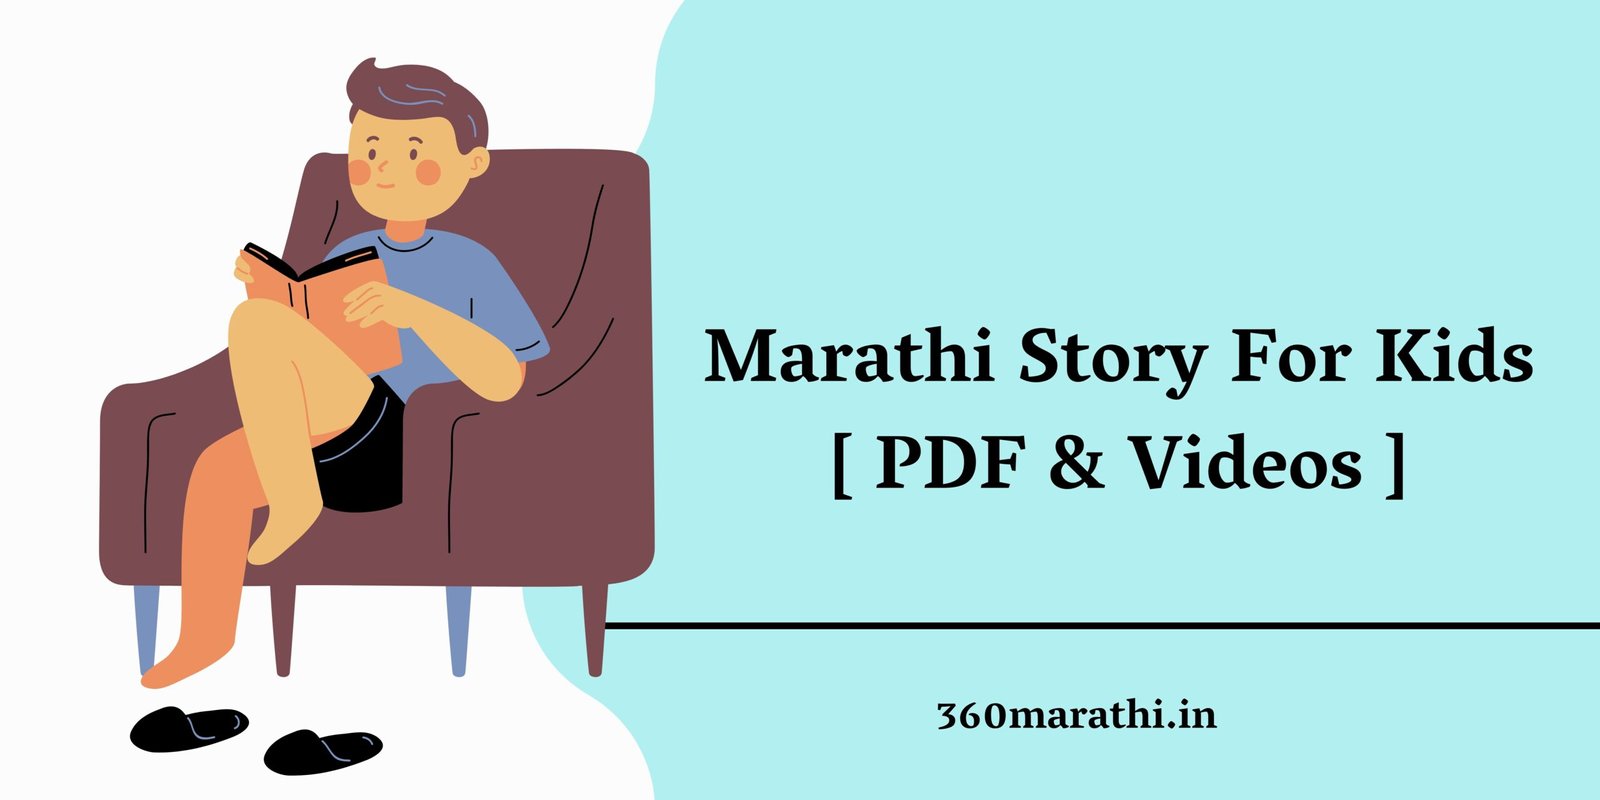 Marathi Story For Kids